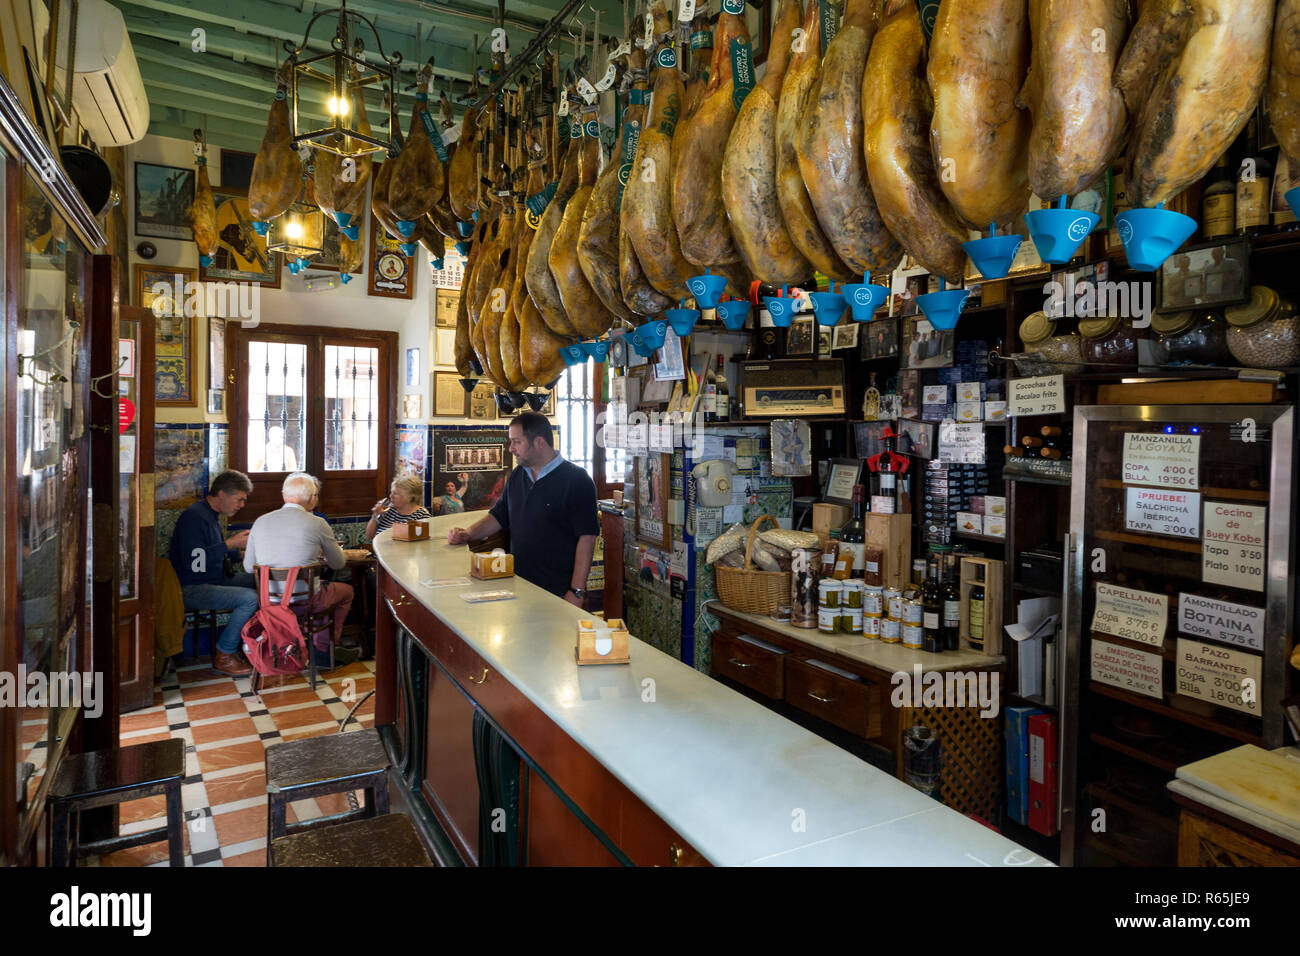 Jamon Serrano o Iberico (Dry cured ham) in Spagnolo bar tapas di Siviglia, in Andalusia, Spagna. Foto Stock